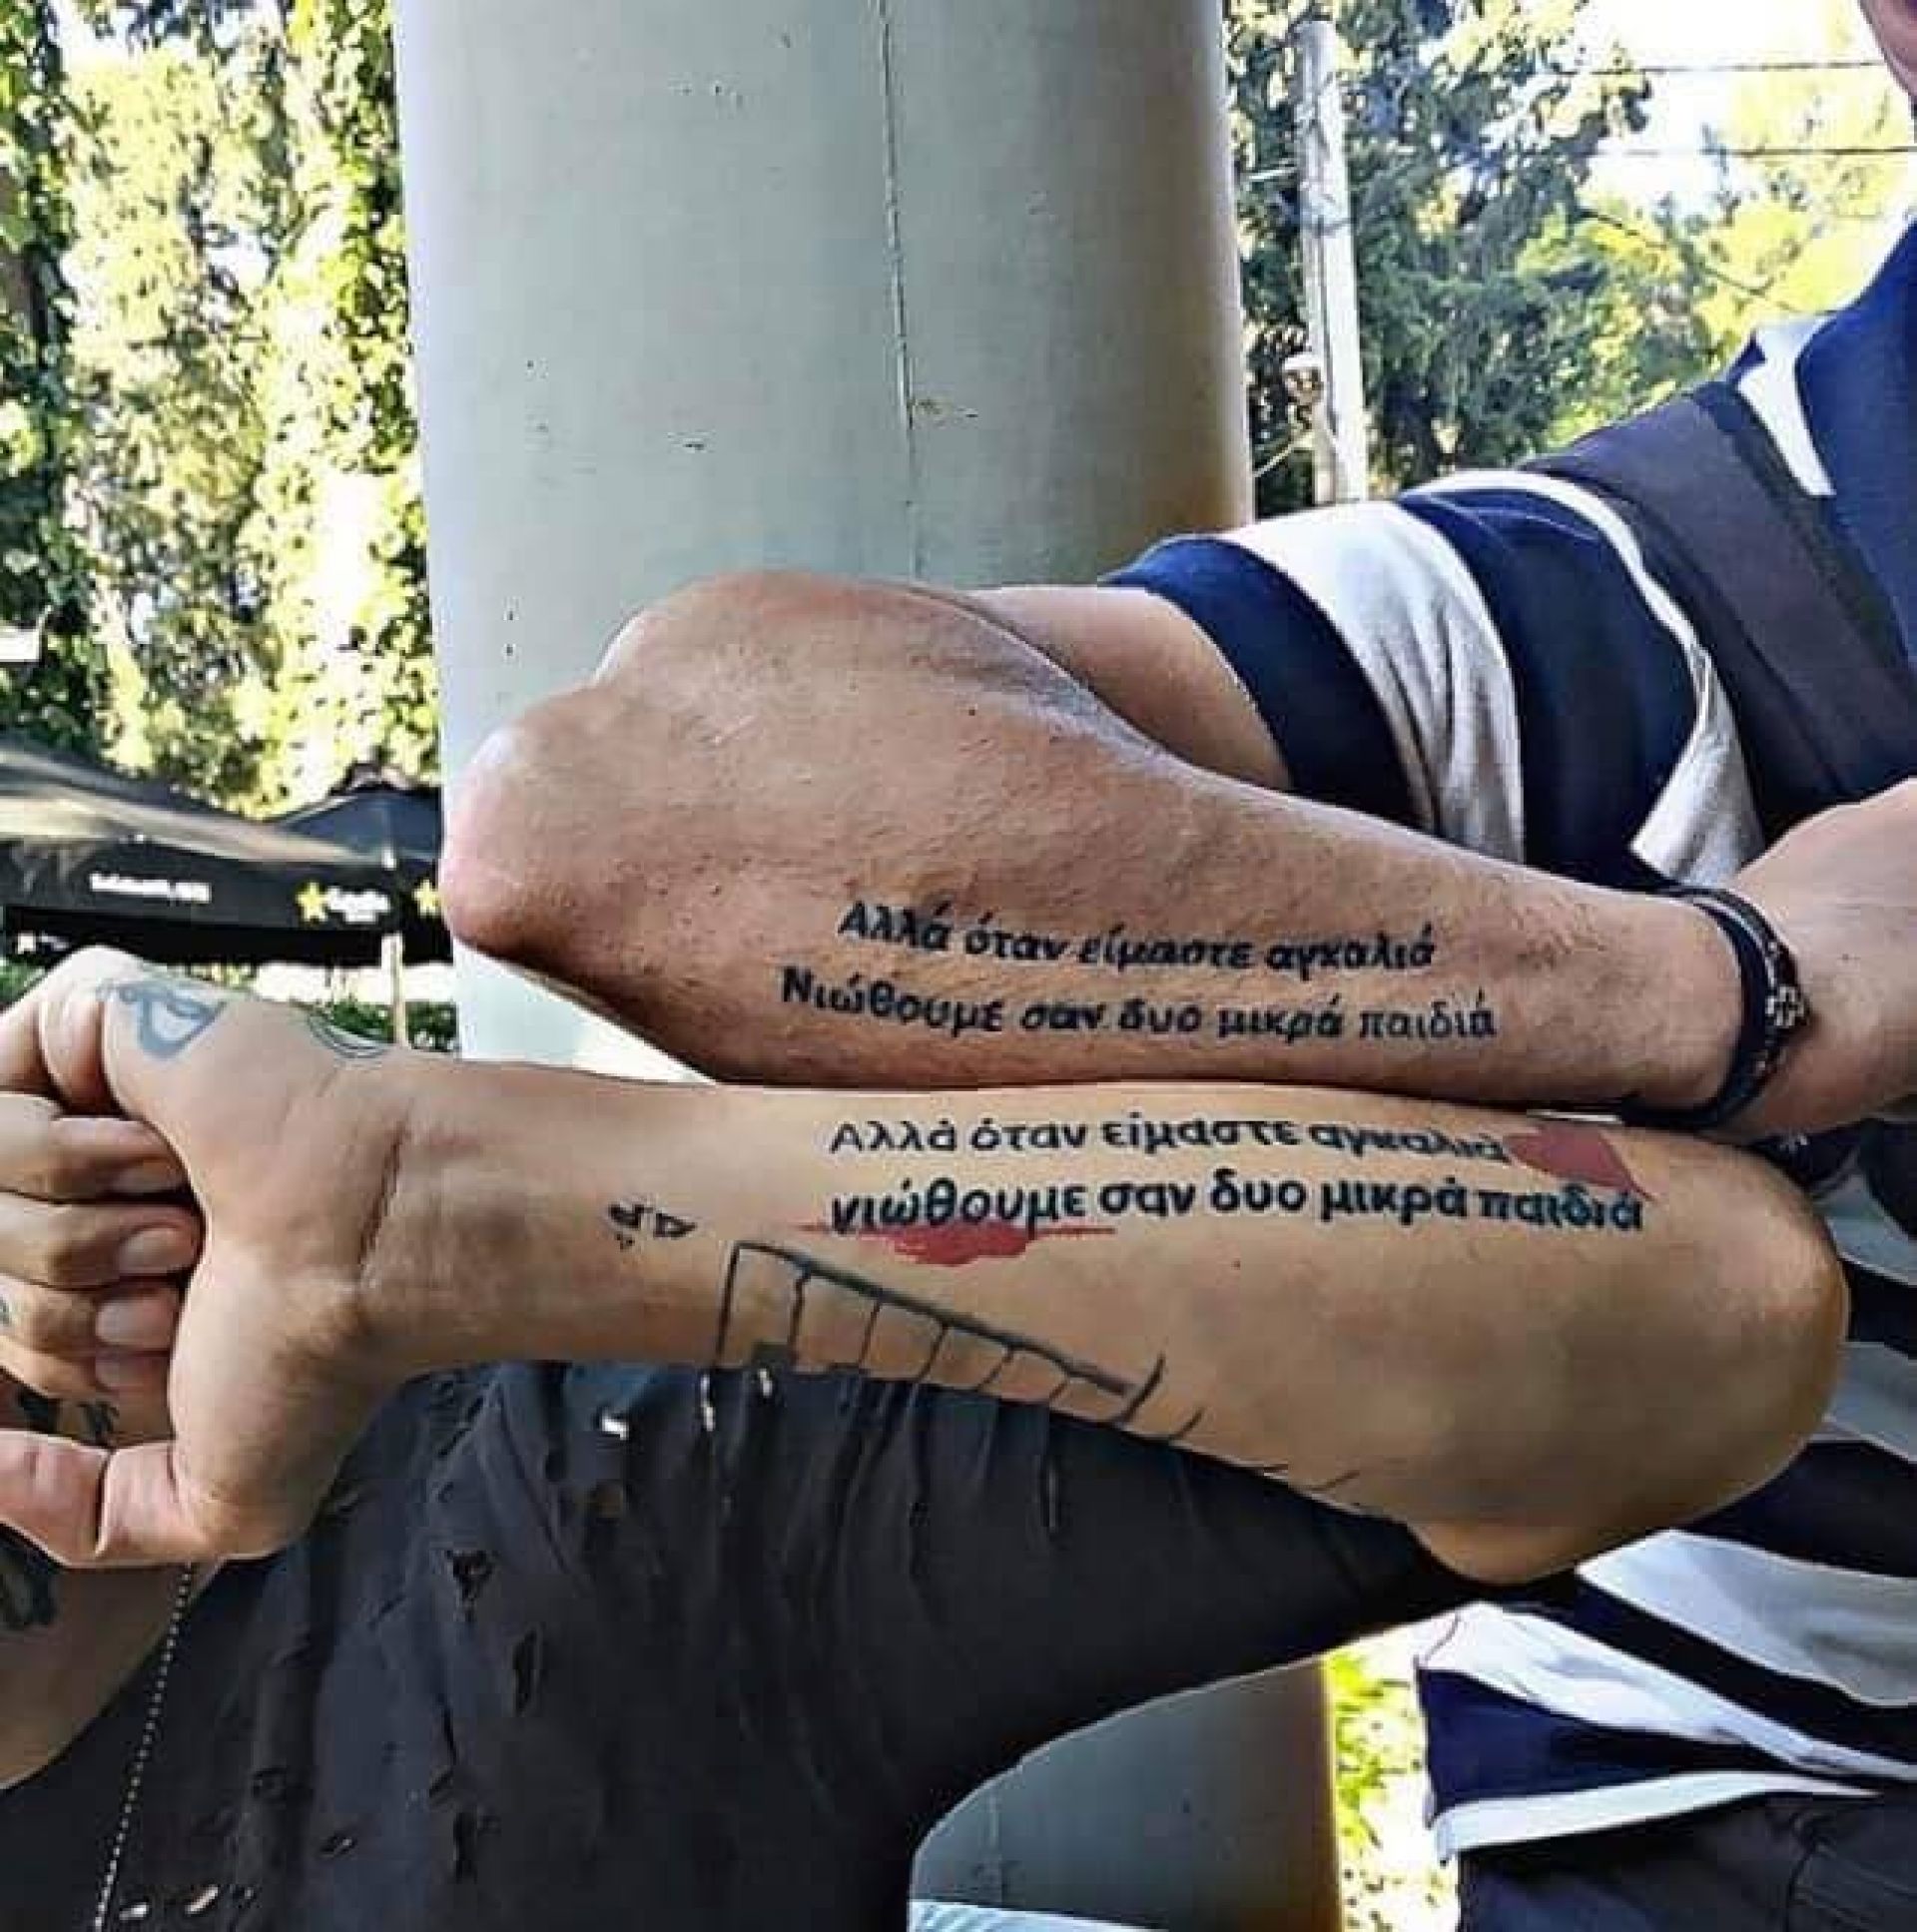 Τα δεκάδες τατουάζ, το τραγούδι του σε ταφόπλακα, το συγκινητικό viral βίντεο: Ντελίριο θαυμασμού για γνωστό Έλληνα τραγουδιστή (εικόνες+βίντεο)